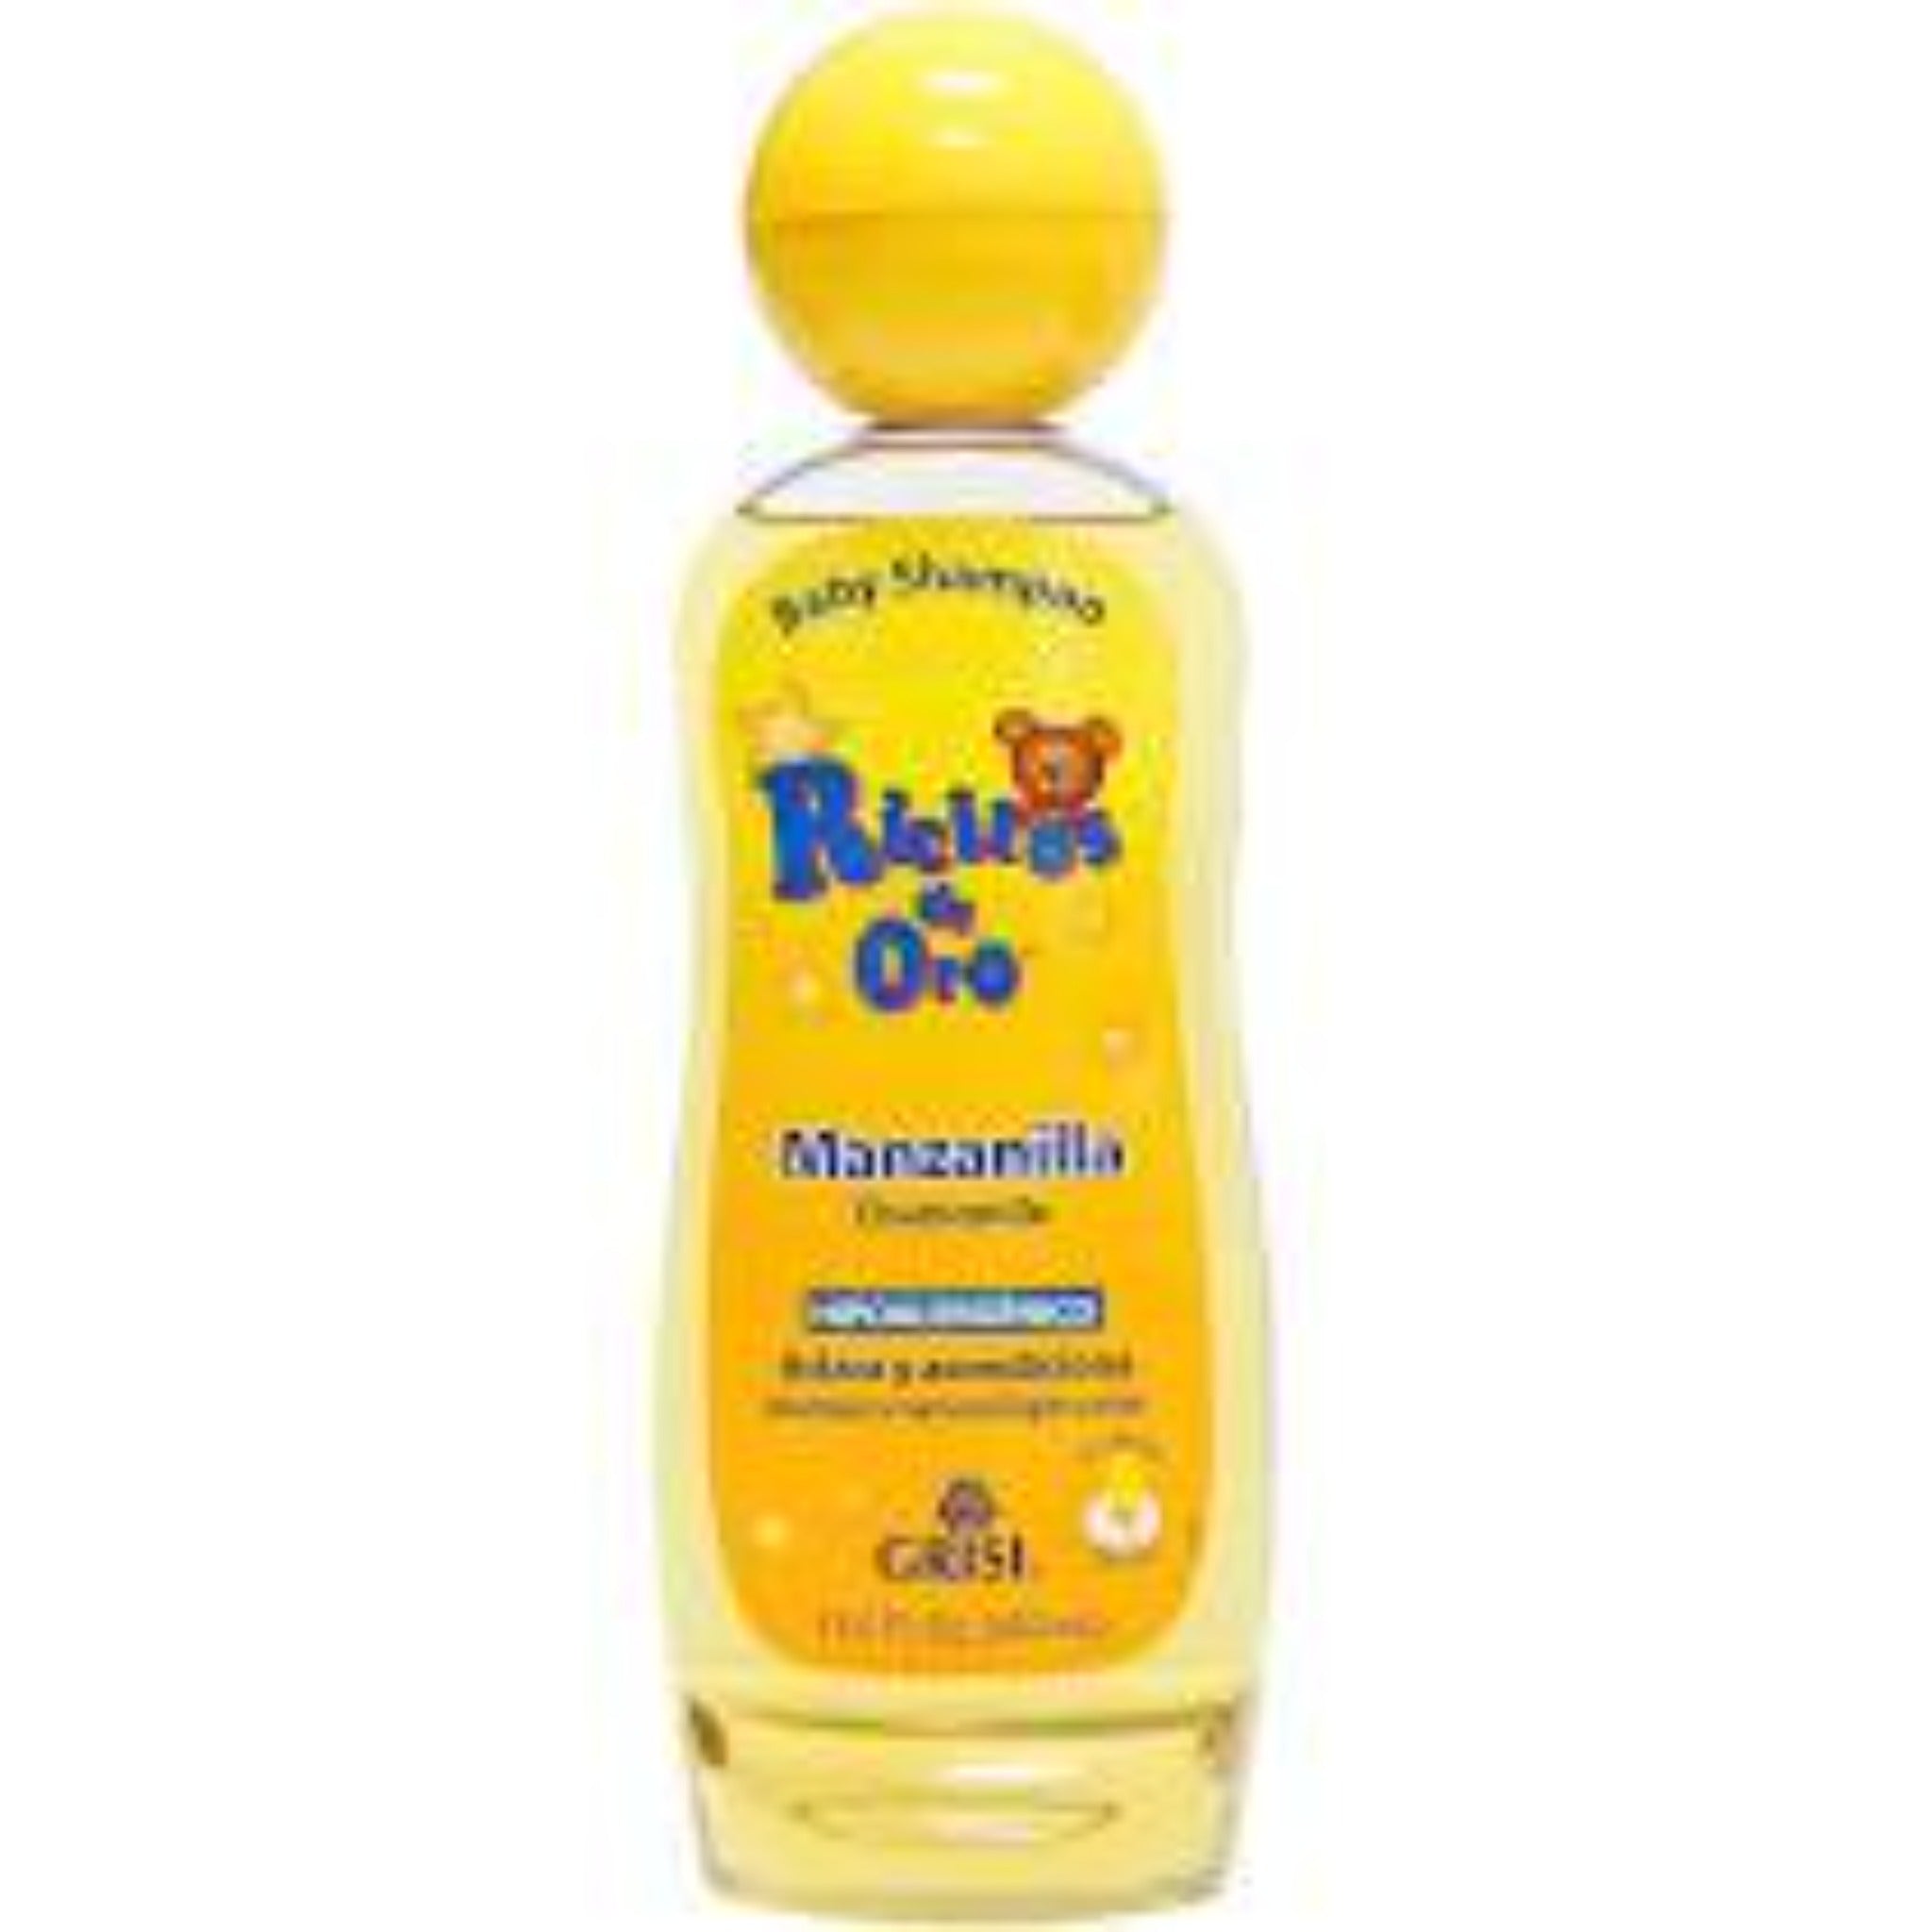 Grisi Ricitos de Oro Chamomile Shampoo 13.5 oz